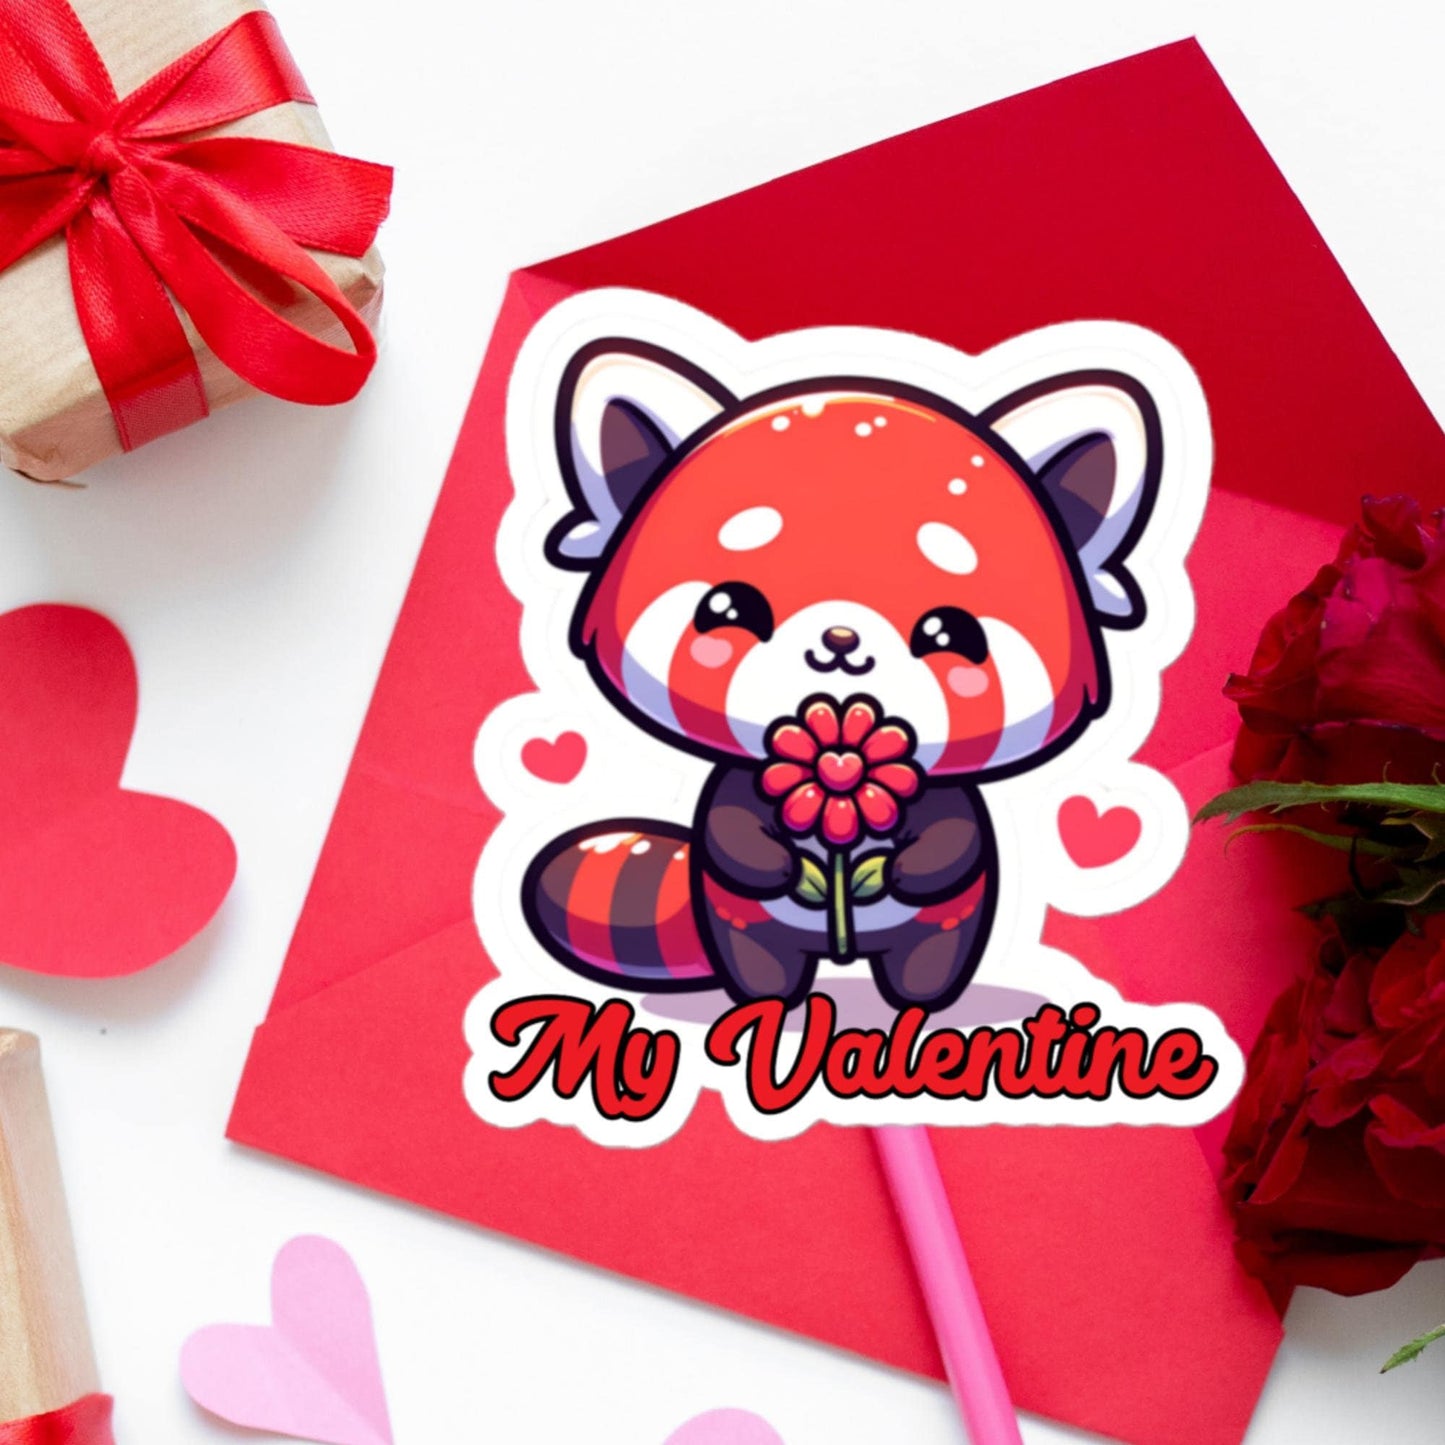 My Valentine Red Panda Heart Flower sticker Valentine&#39;s Day Gift Stickers Bubble-free stickers